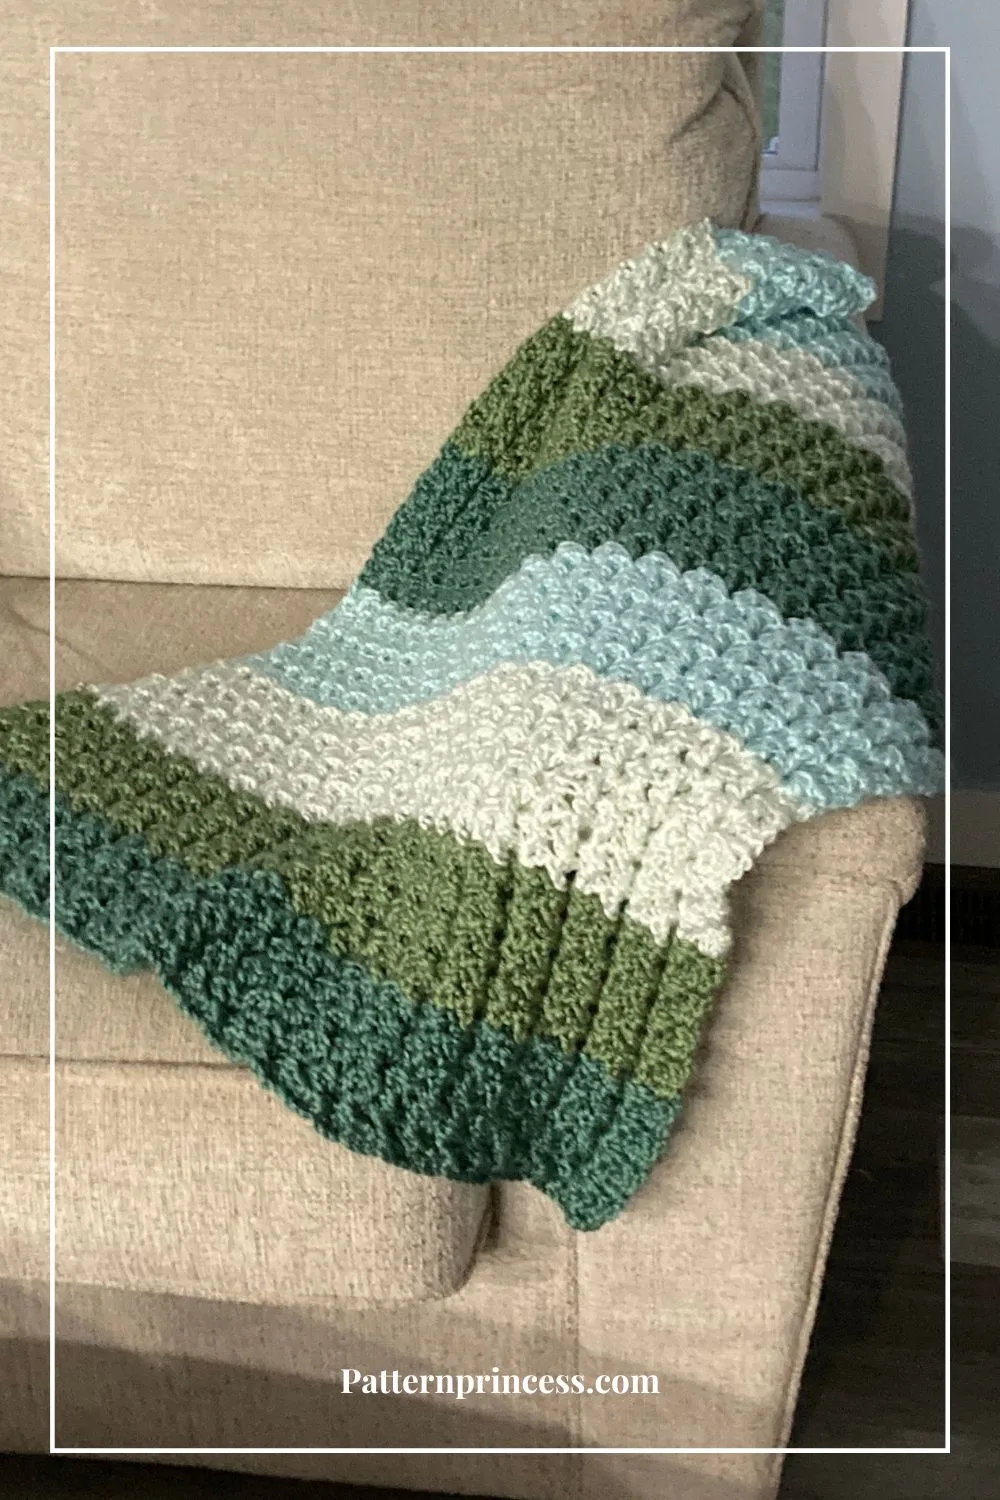 Hudson blanket on sofa